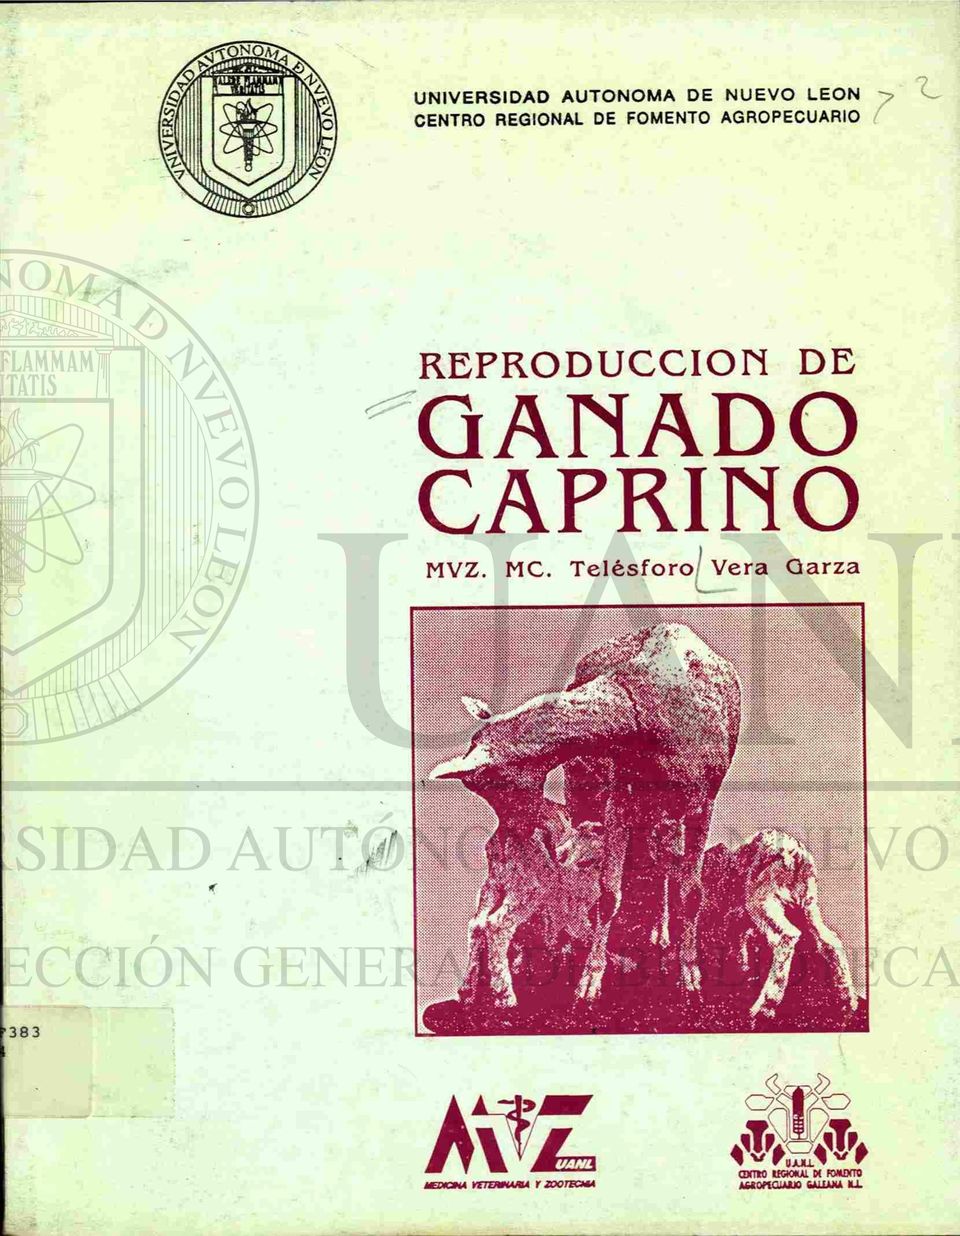 DE GANADO CAPRINO MVZ. MC.